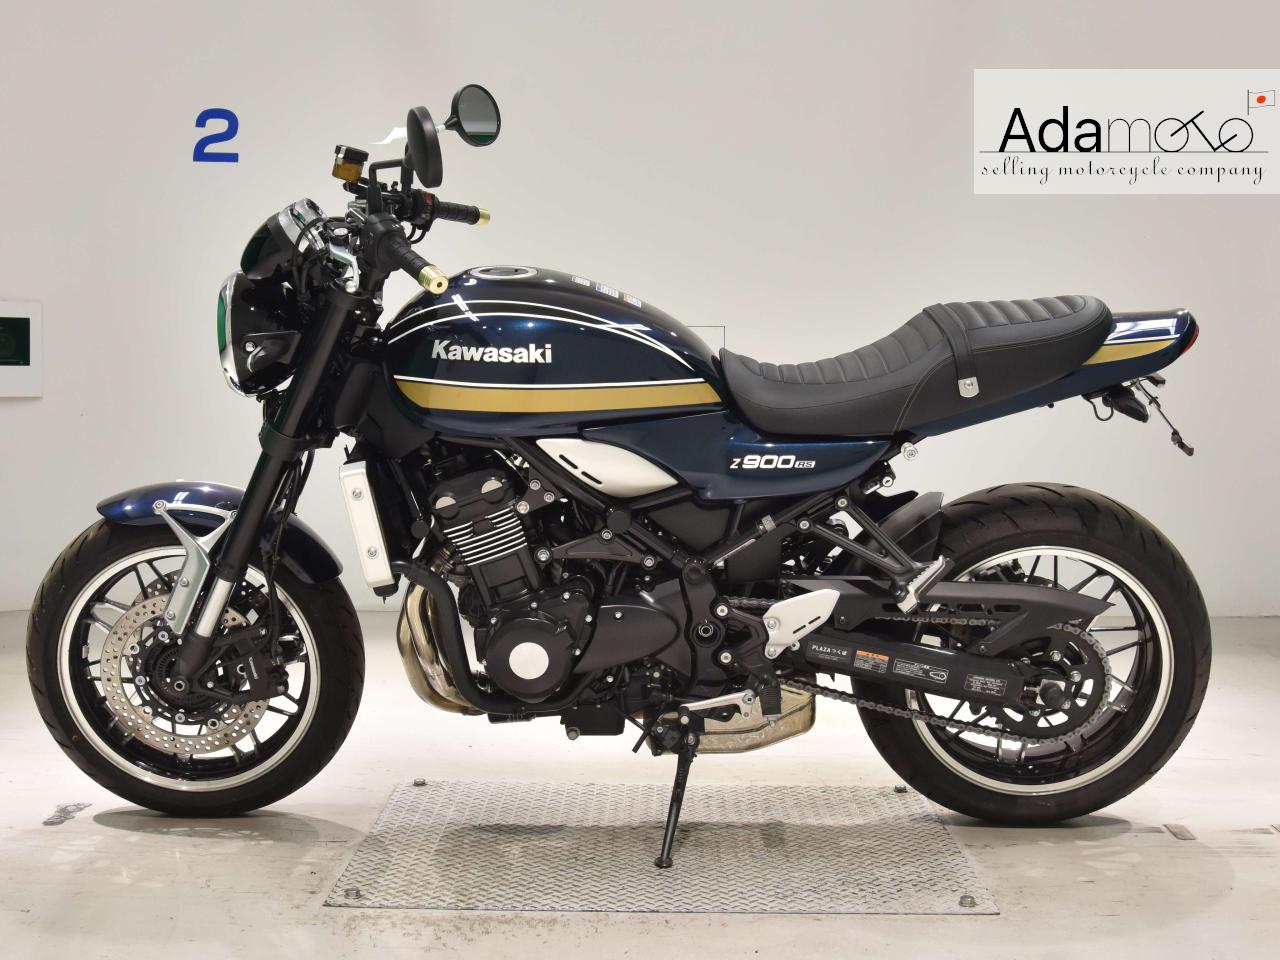 Kawasaki Z900RS - Adamoto - Motorcycles from Japan